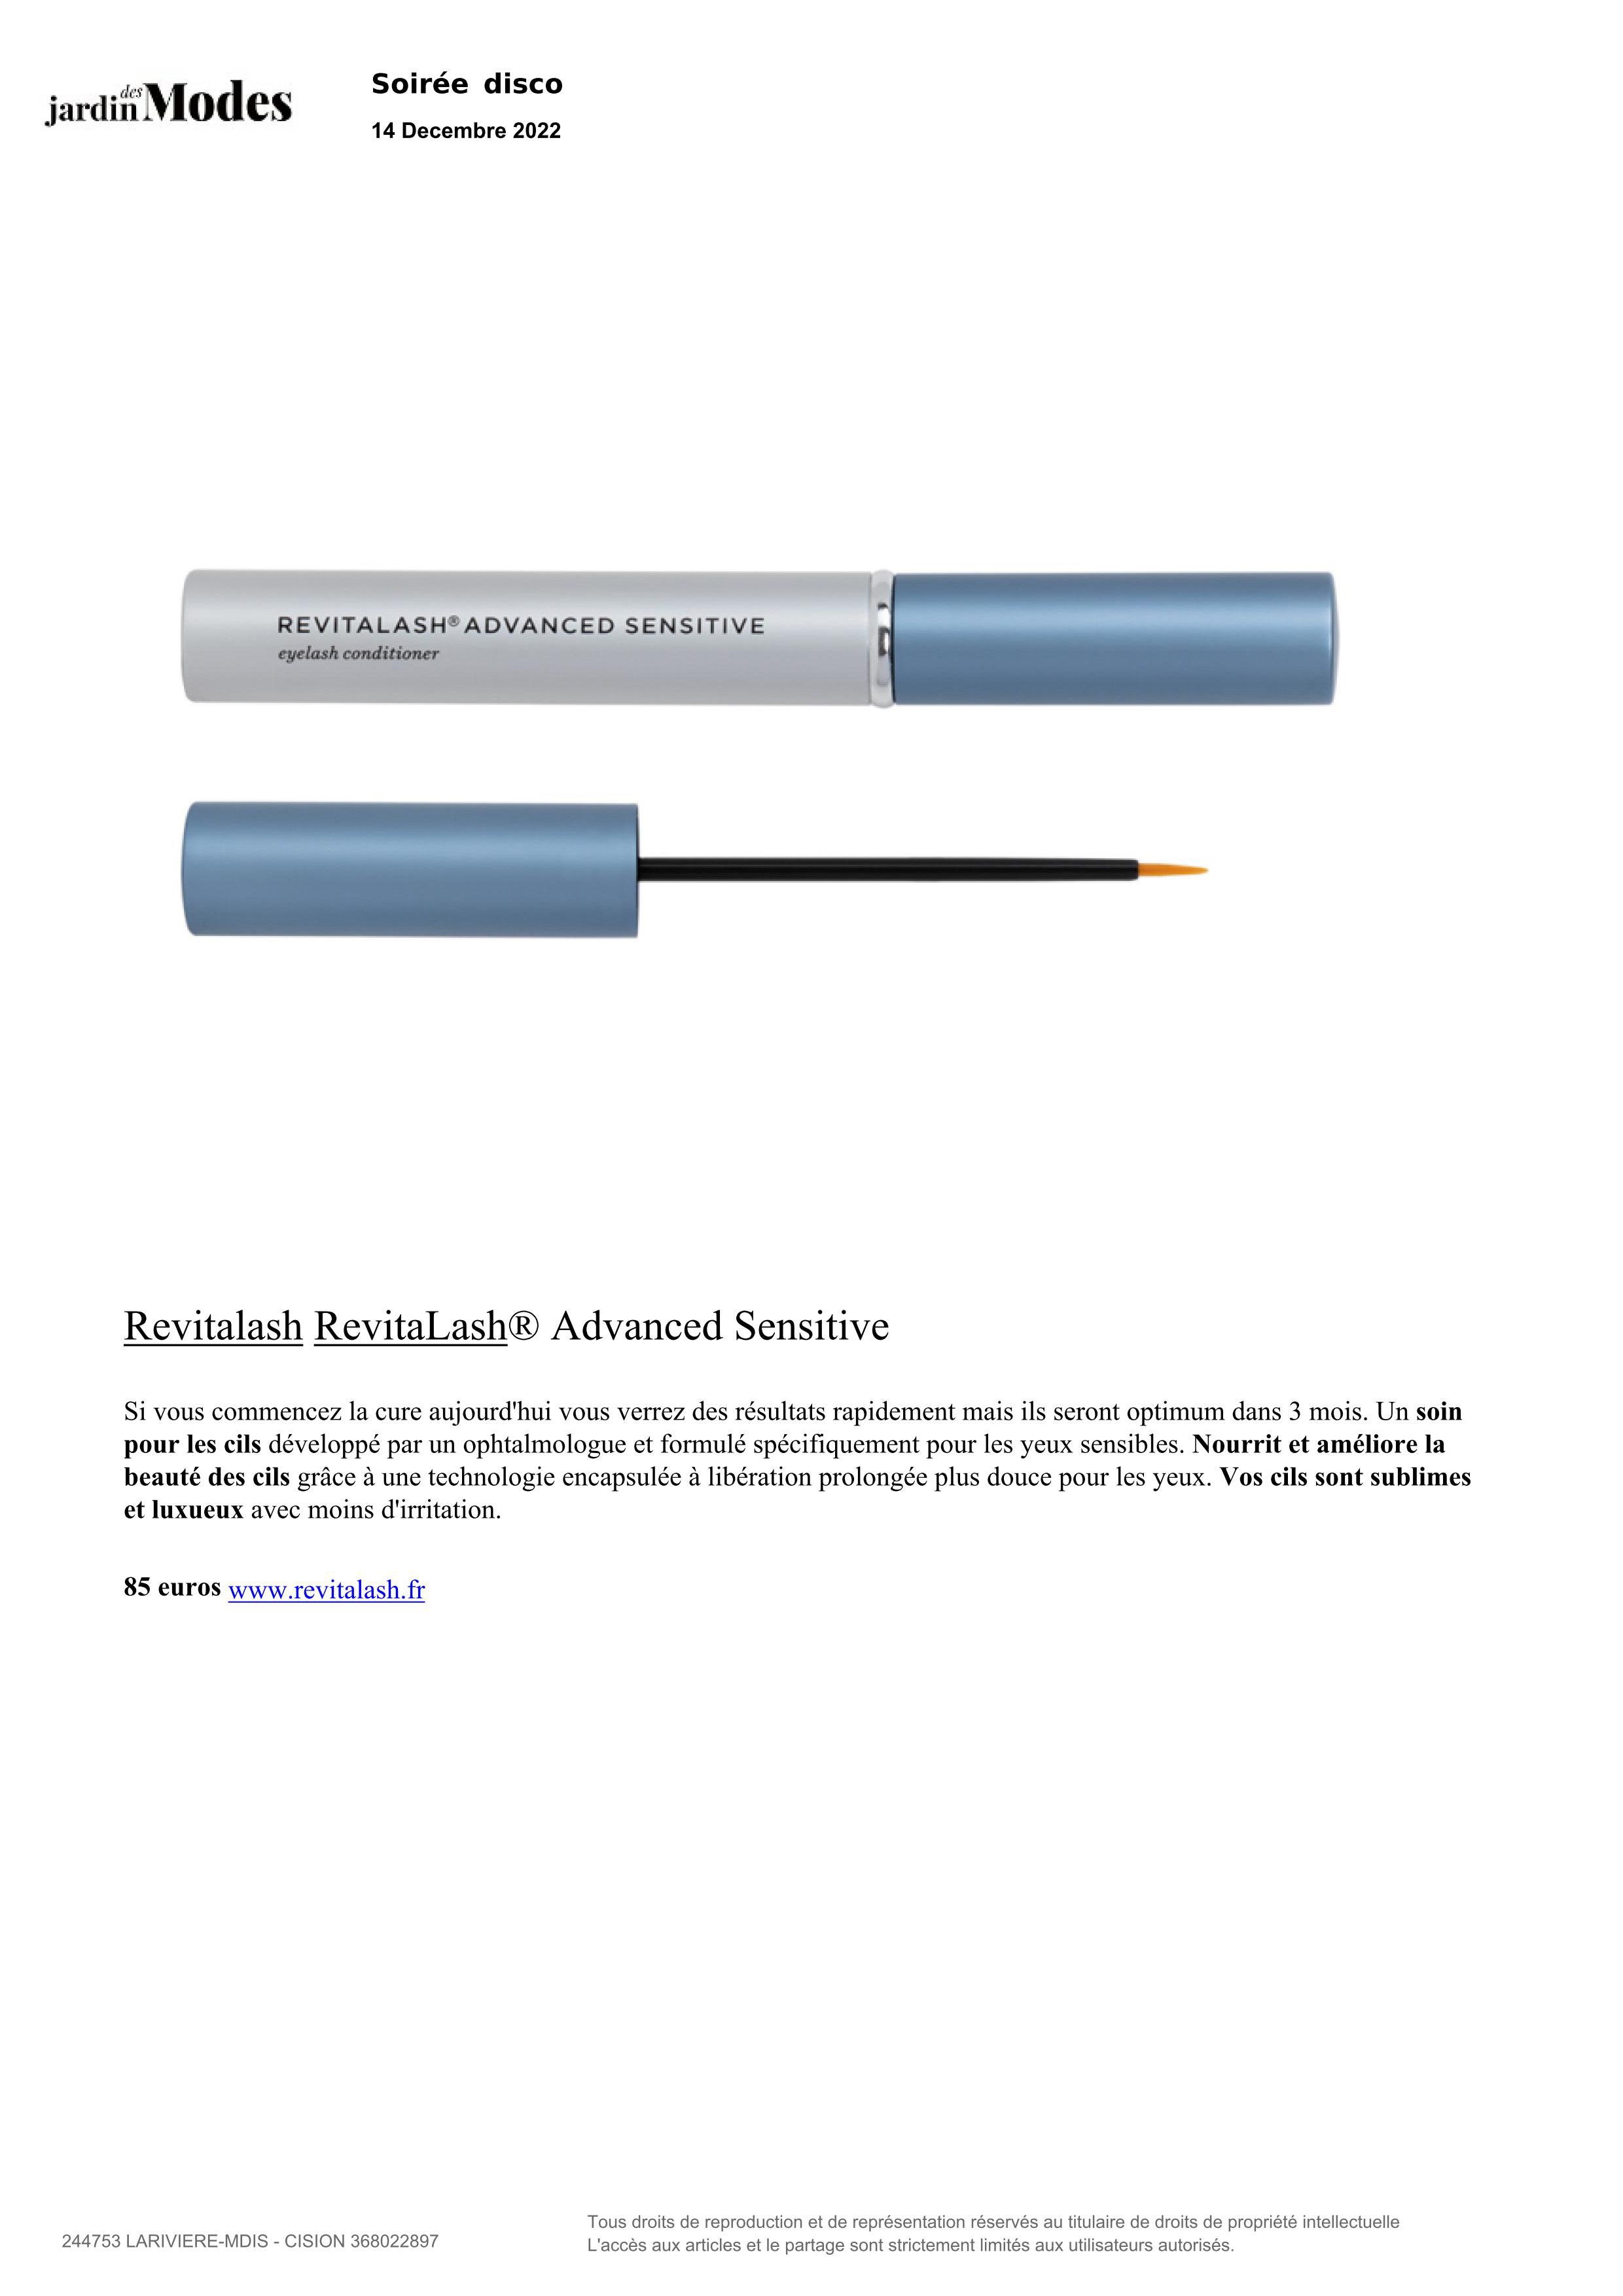 RevitaLash® Advanced Sensitive paru dans Jardin des Modes - Décembre 2022 